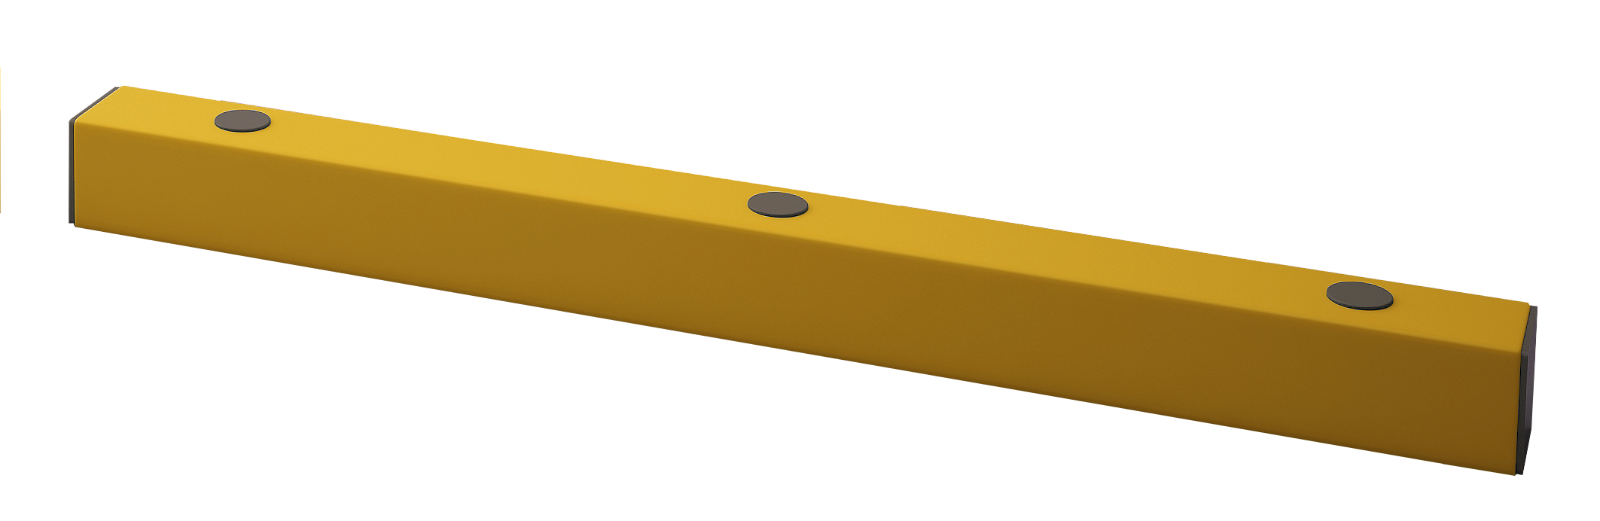 Bodenbarriere -Flex- aus Kunststoff, Länge 1200 mm